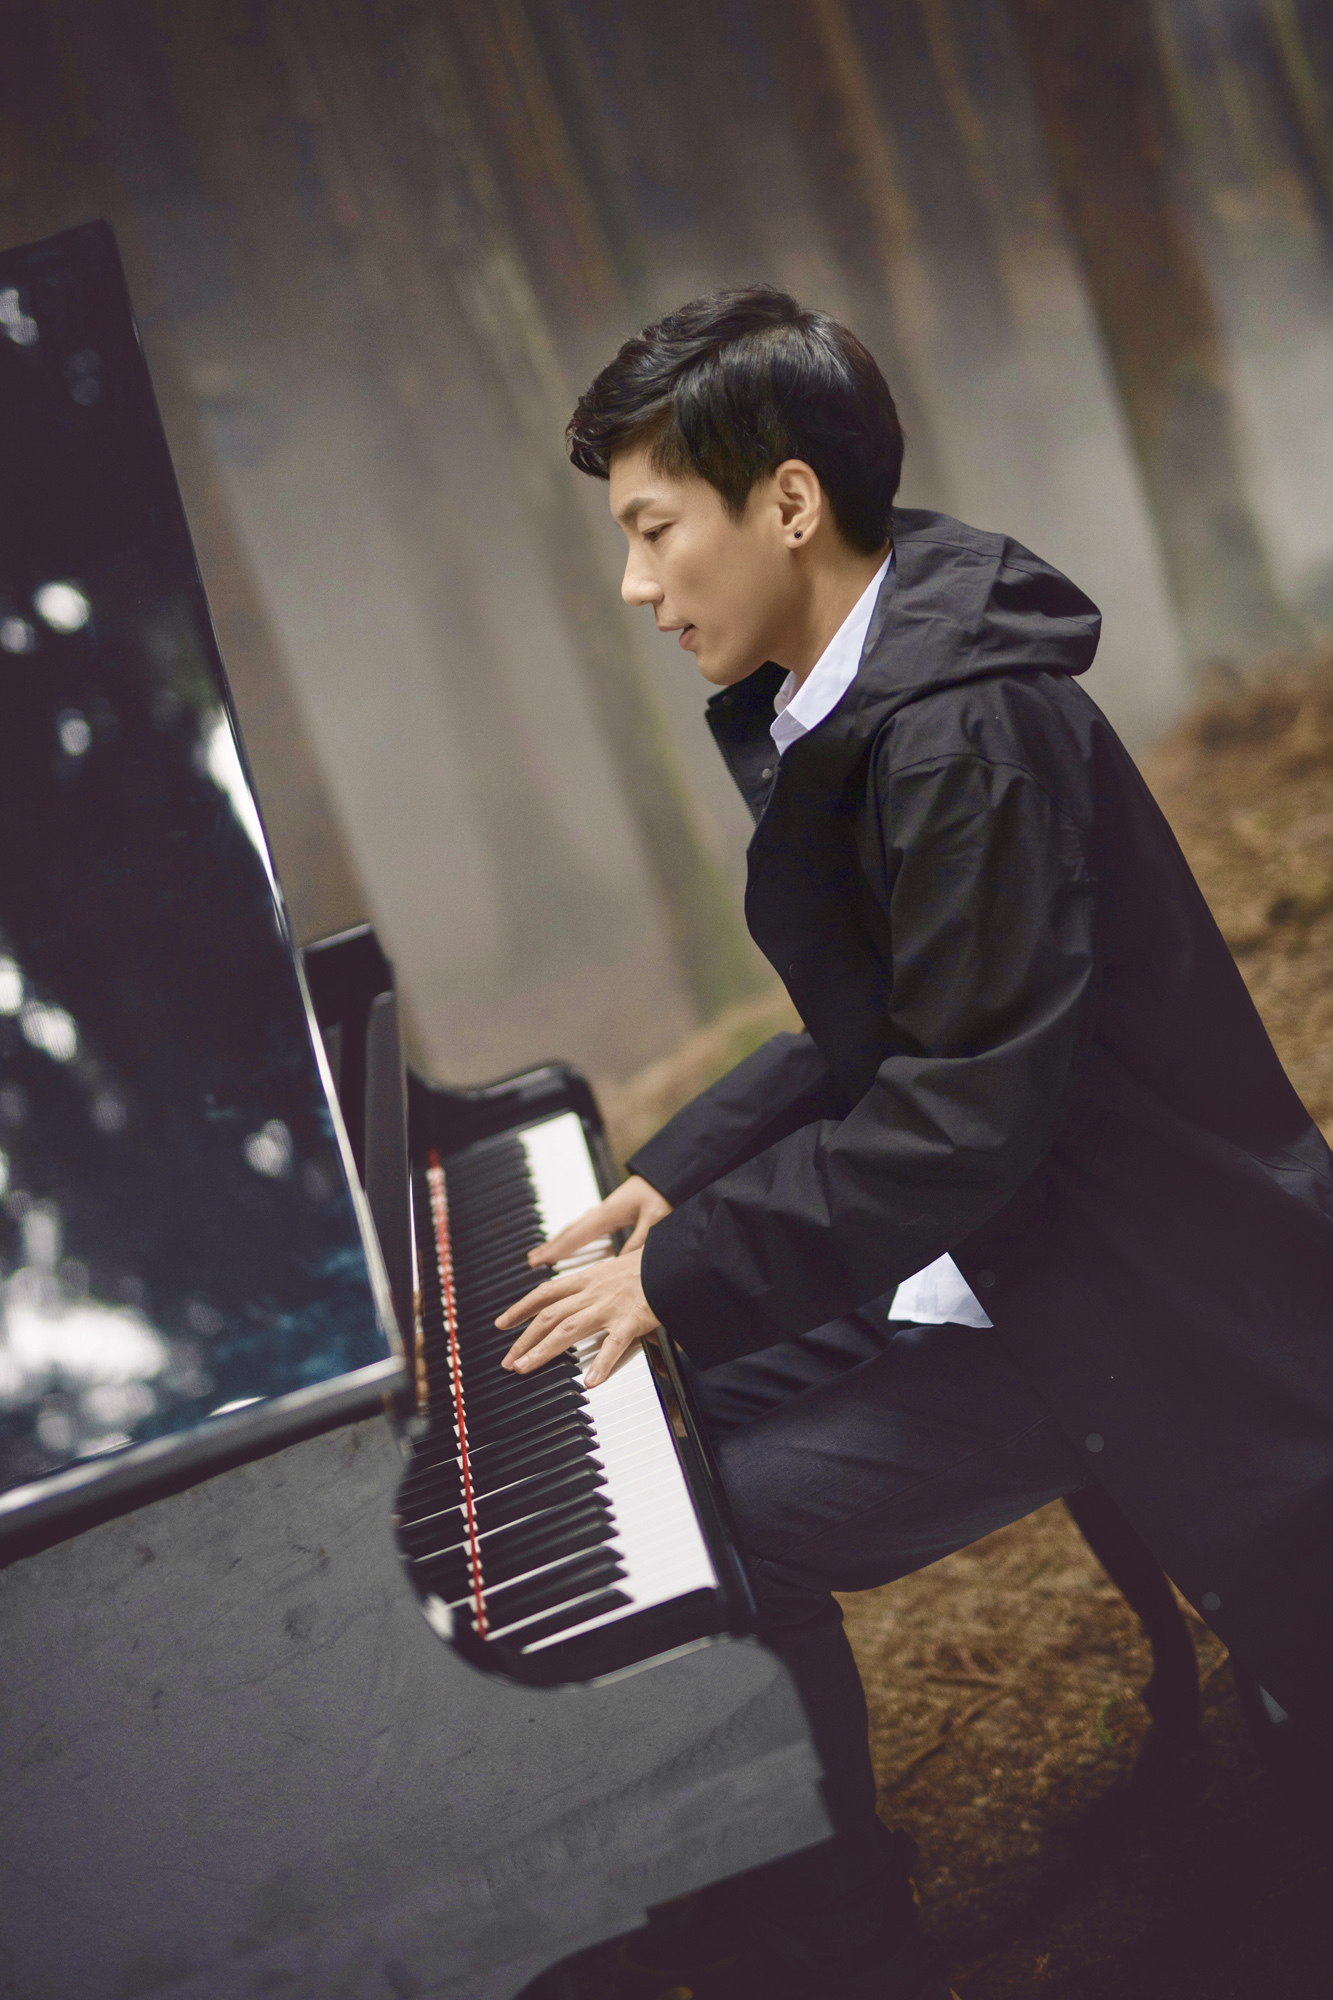 姜明奇《极光》单曲上线 逐光而行获赞乐坛新势力